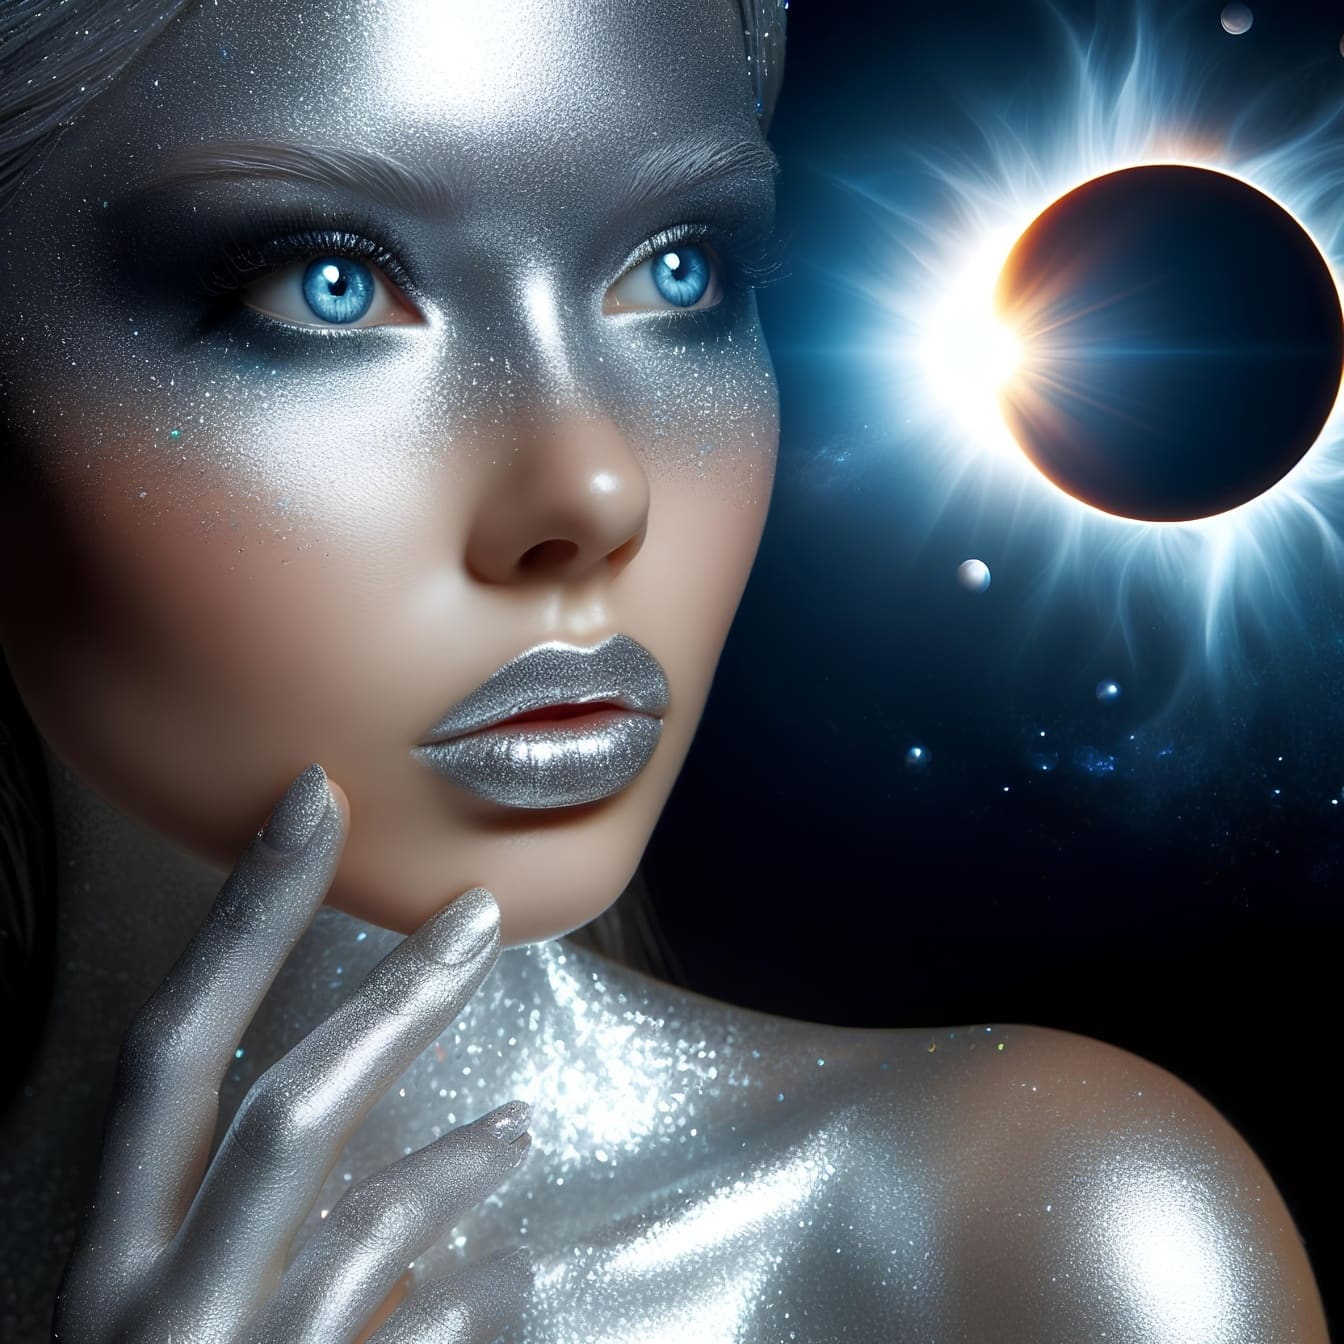 Đồ họa kỹ thuật số của một người phụ nữ với trang điểm lấp lánh và đôi mắt xanh, mô tả vẻ đẹp thể vía